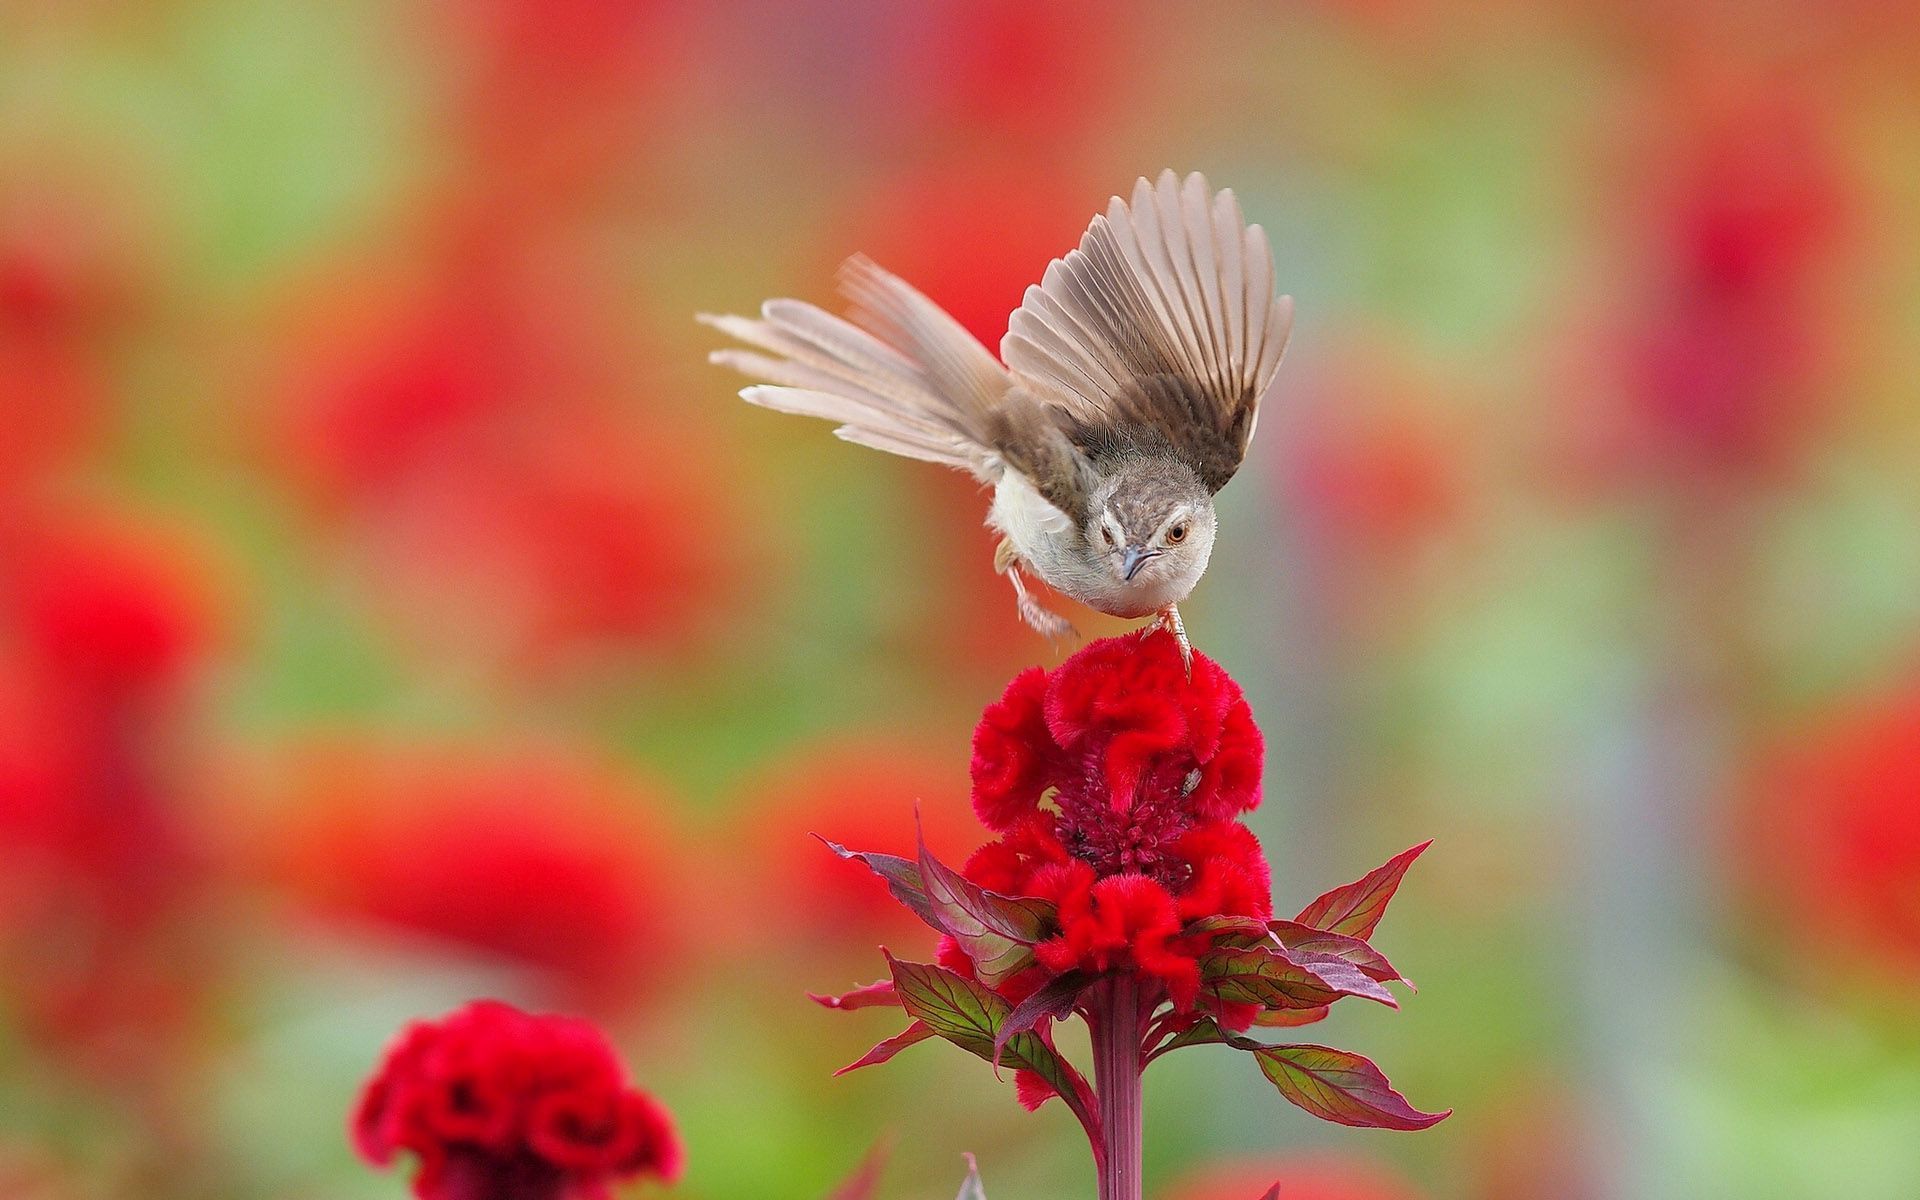  Tiere Hintergrundbild 1920x1200. Kleiner Vogel auf der Blume, Blumen, Tier, Tiere Hintergrundbilder. Kleiner Vogel auf der Blume, Blumen, Tier, Tie